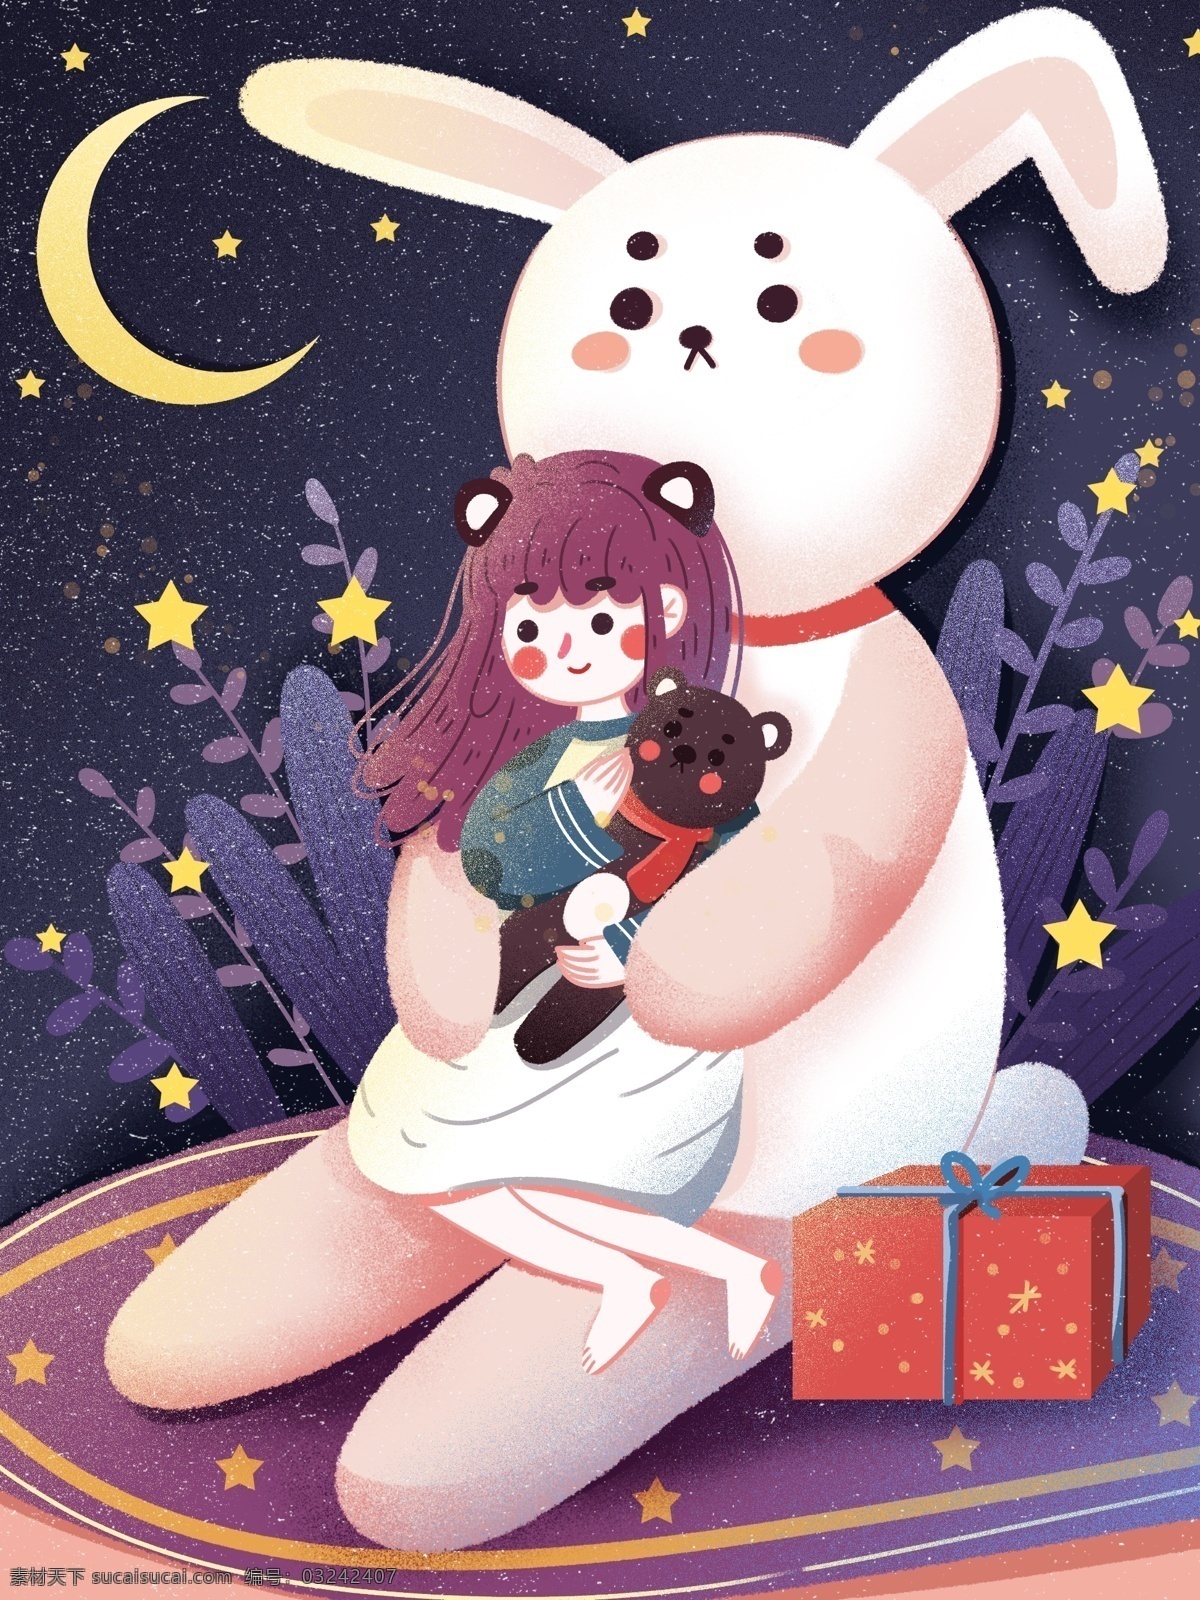 治愈 晚安 世界 兔子 怀抱 中 唯美 浪漫 女孩 创意 可爱 星星 星空 礼物 熊熊 温馨 温暖 月亮 植物 创意插画